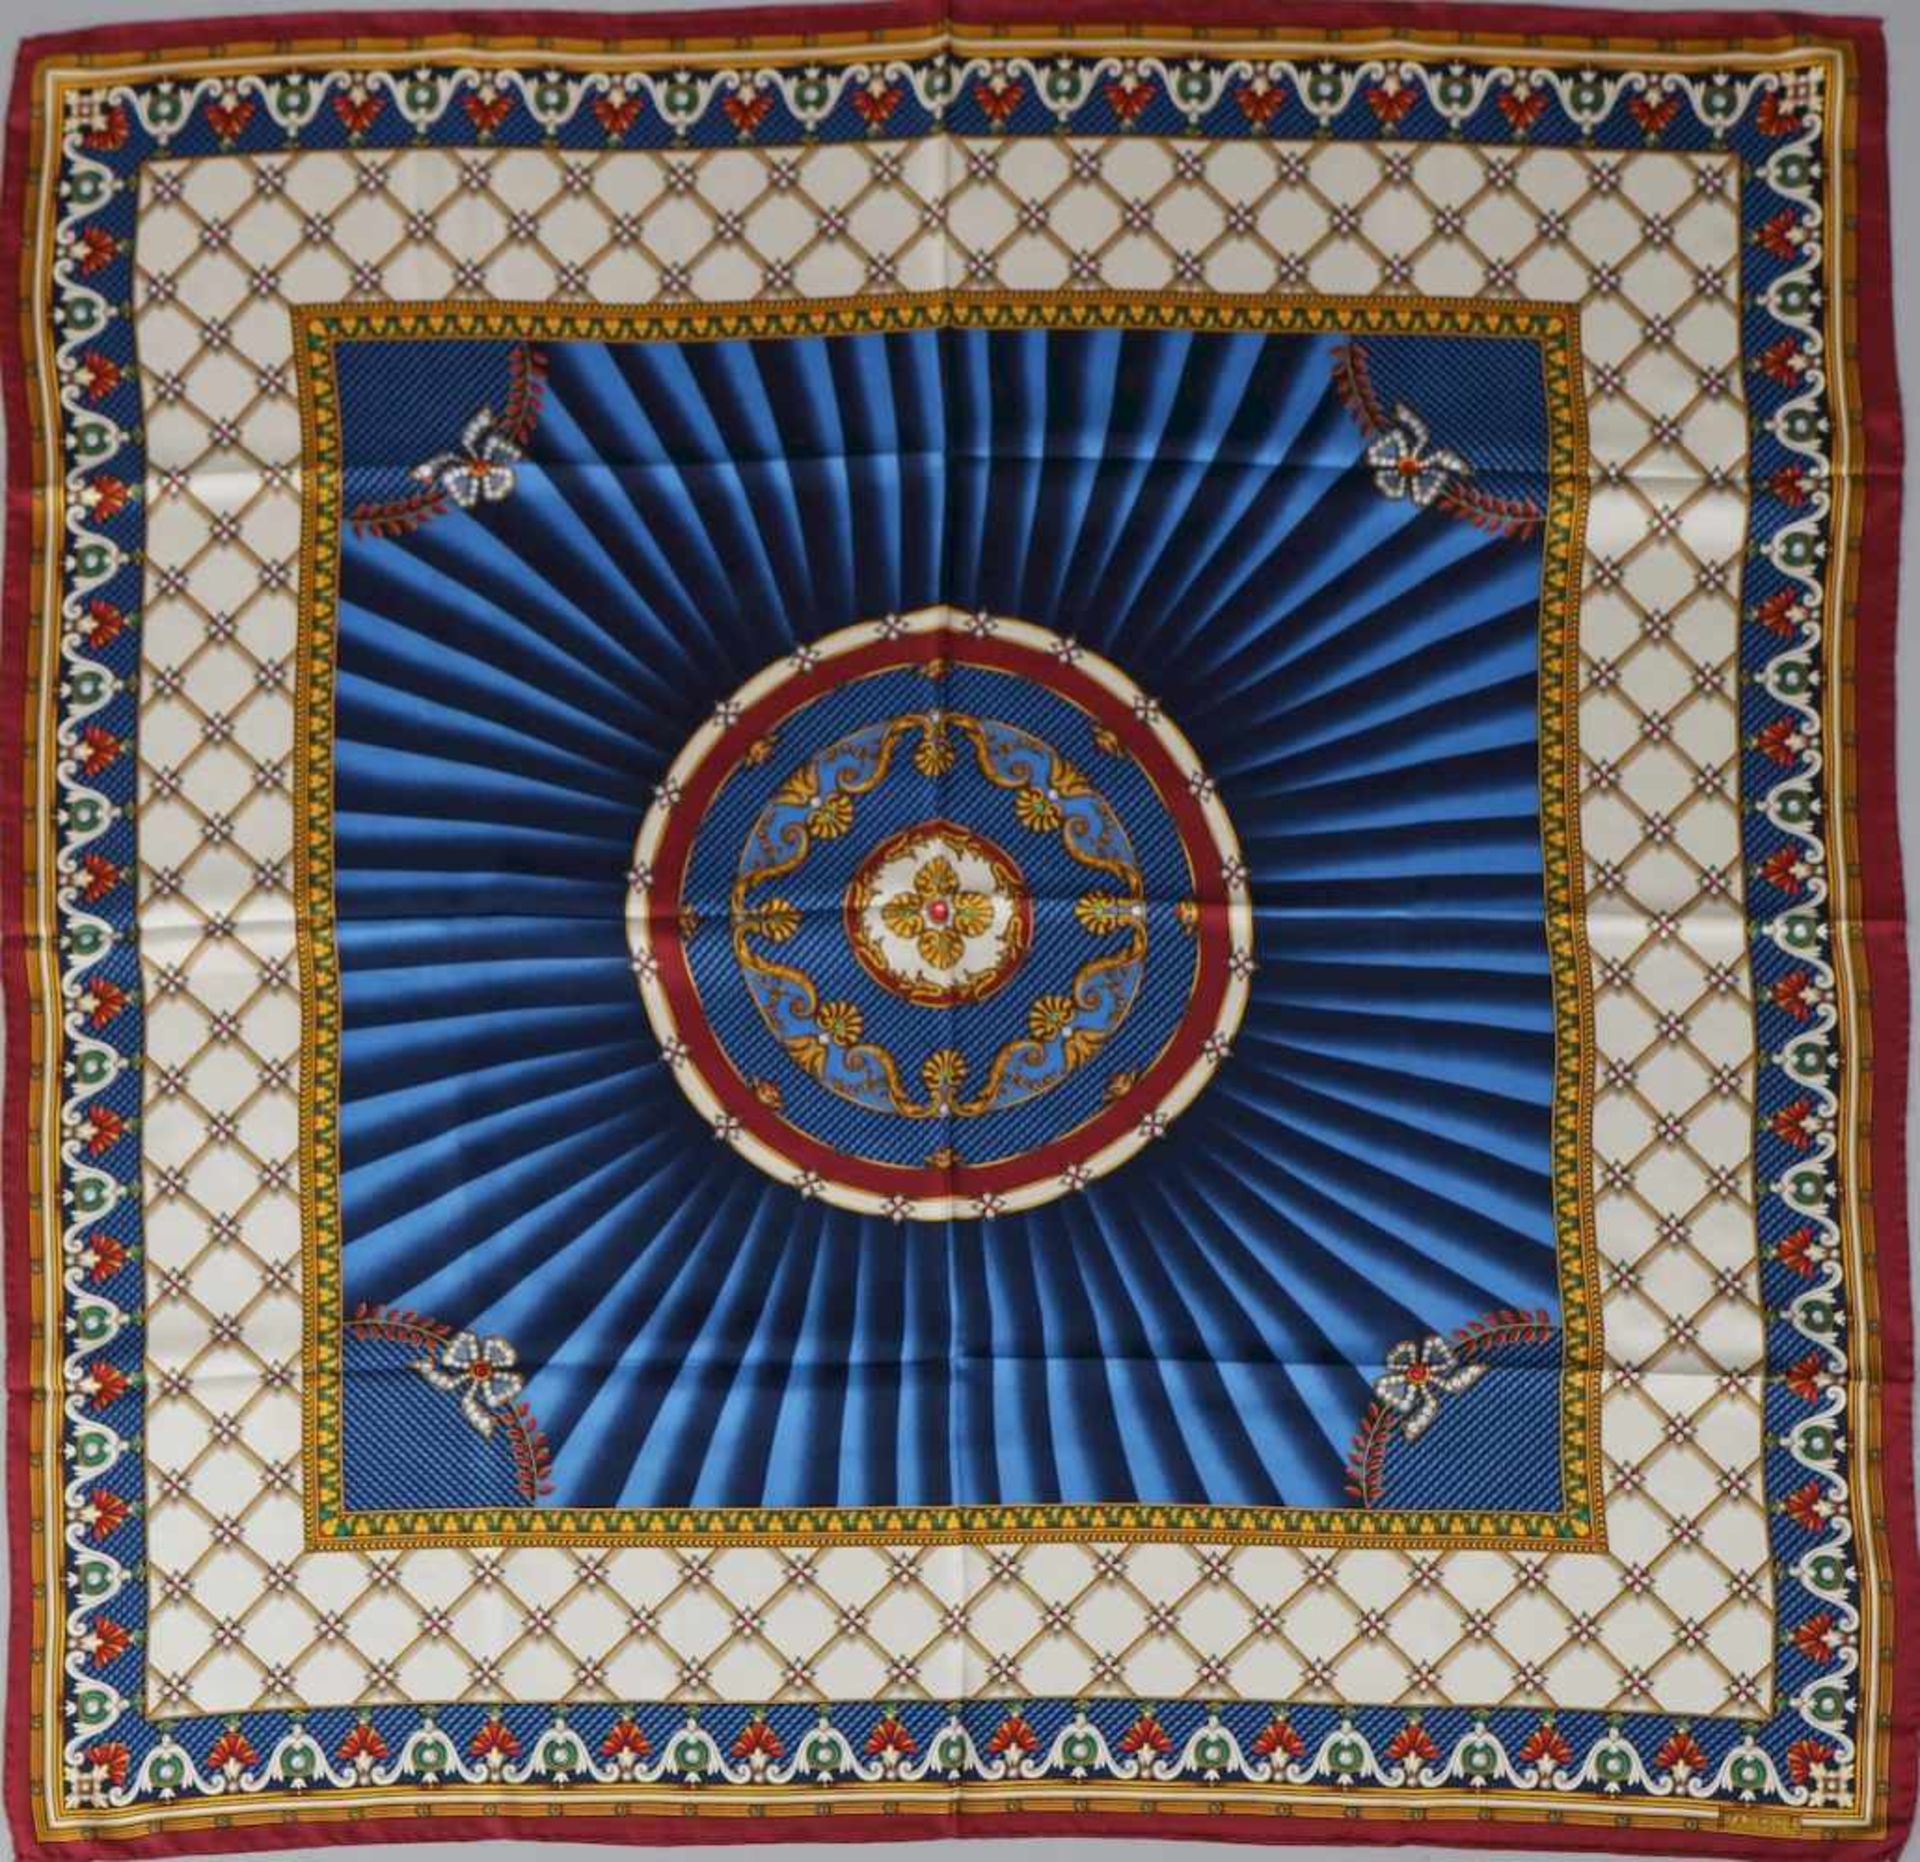 FABERGÉ SeidentuchSeide, blau-rotes, geometrisches Dekor (Fabergé-typische Emailleoptik), ca.